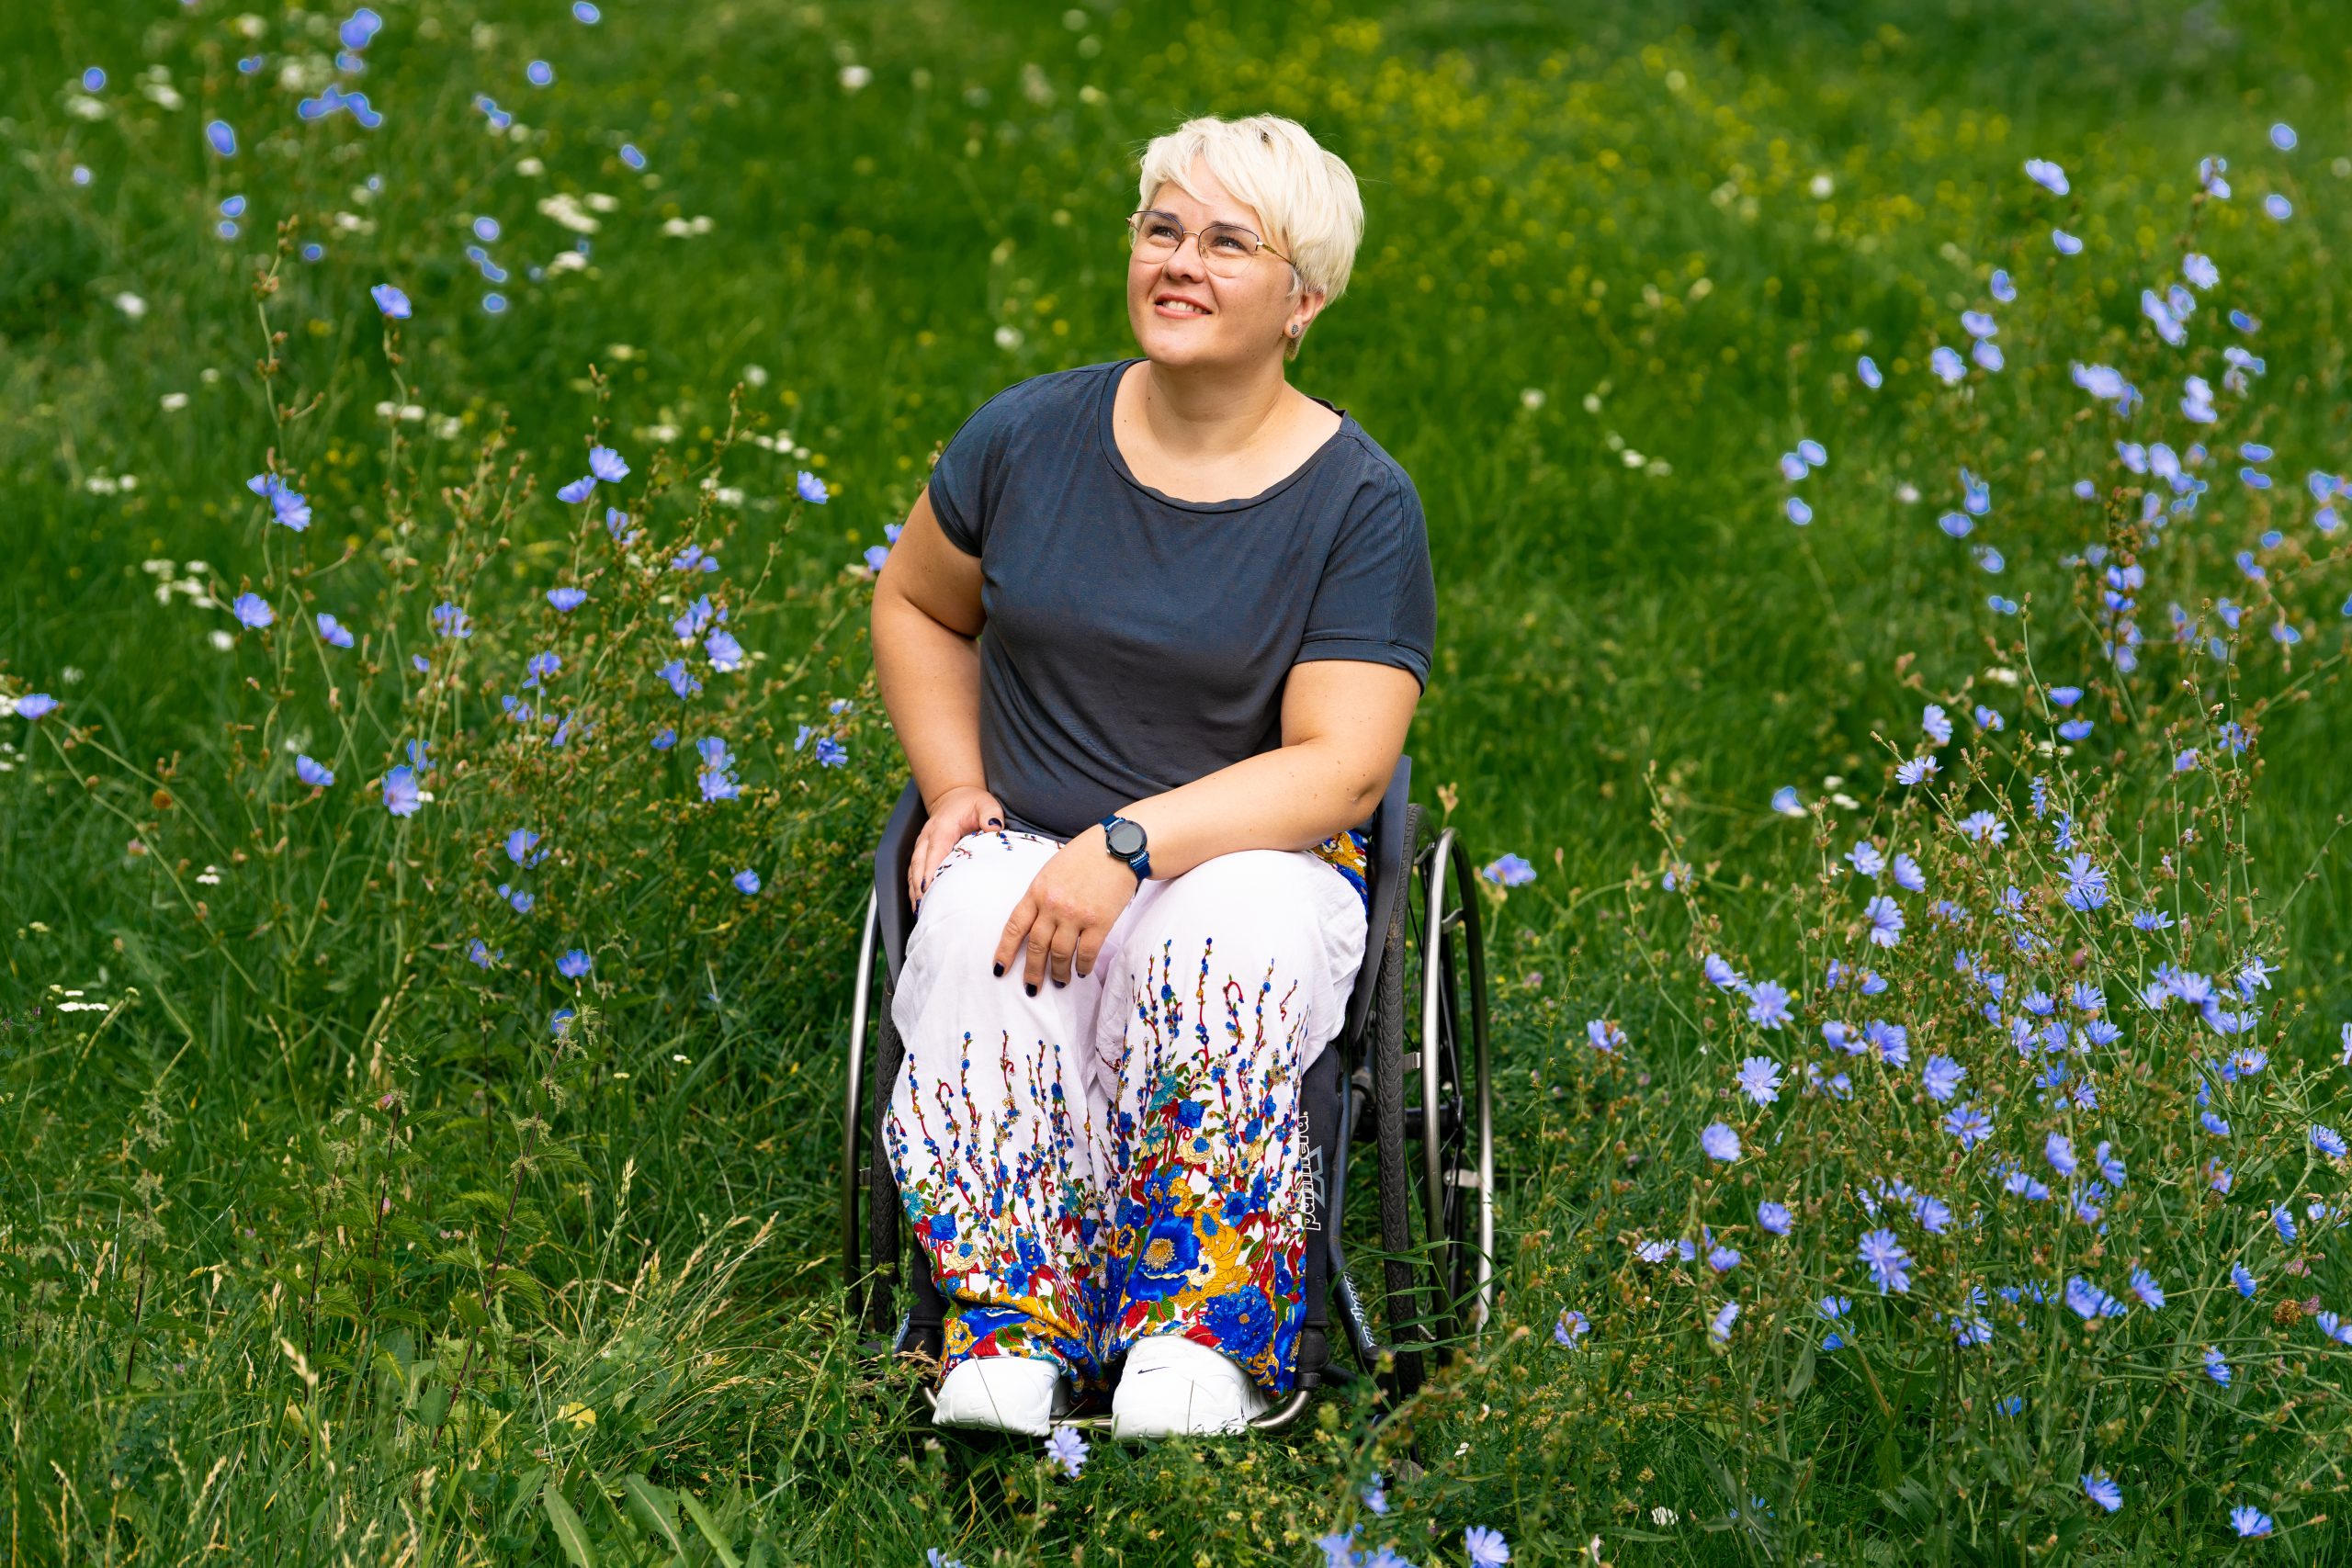 Zdjęcie Justyny Kułakowskiej - około 40 letniej kobiety na wózku. Justyna jest na łace, dookoła rosną polne kwiaty. Uśmiecha się.